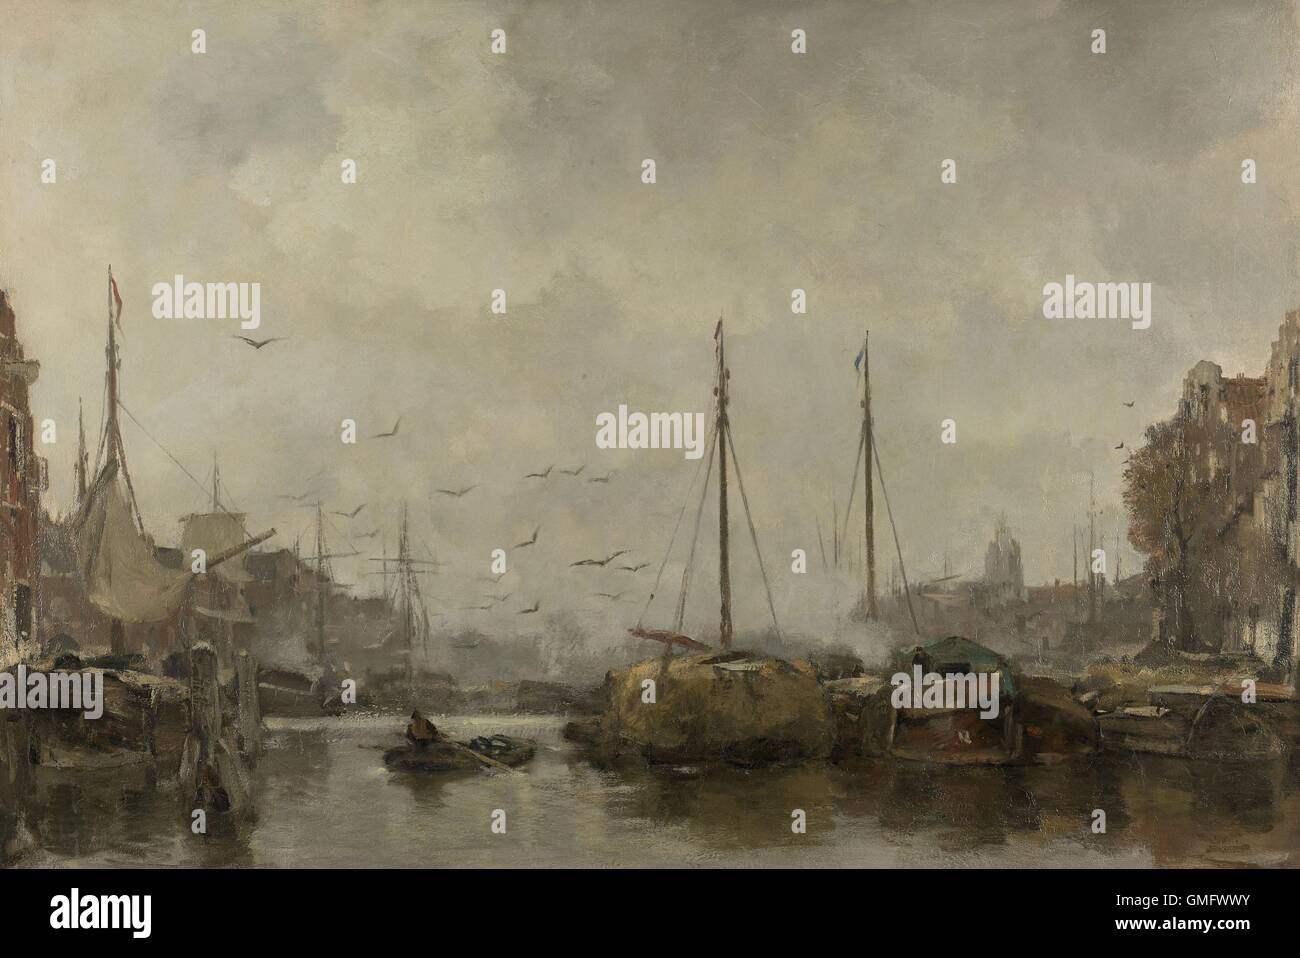 Stadtbild von Jacob Maris, c. 1885-87, niederländische Malerei, Öl auf Leinwand. Blick auf den Hafen einer niederländischen Stadt mit Boote vertäut an der Stockfoto